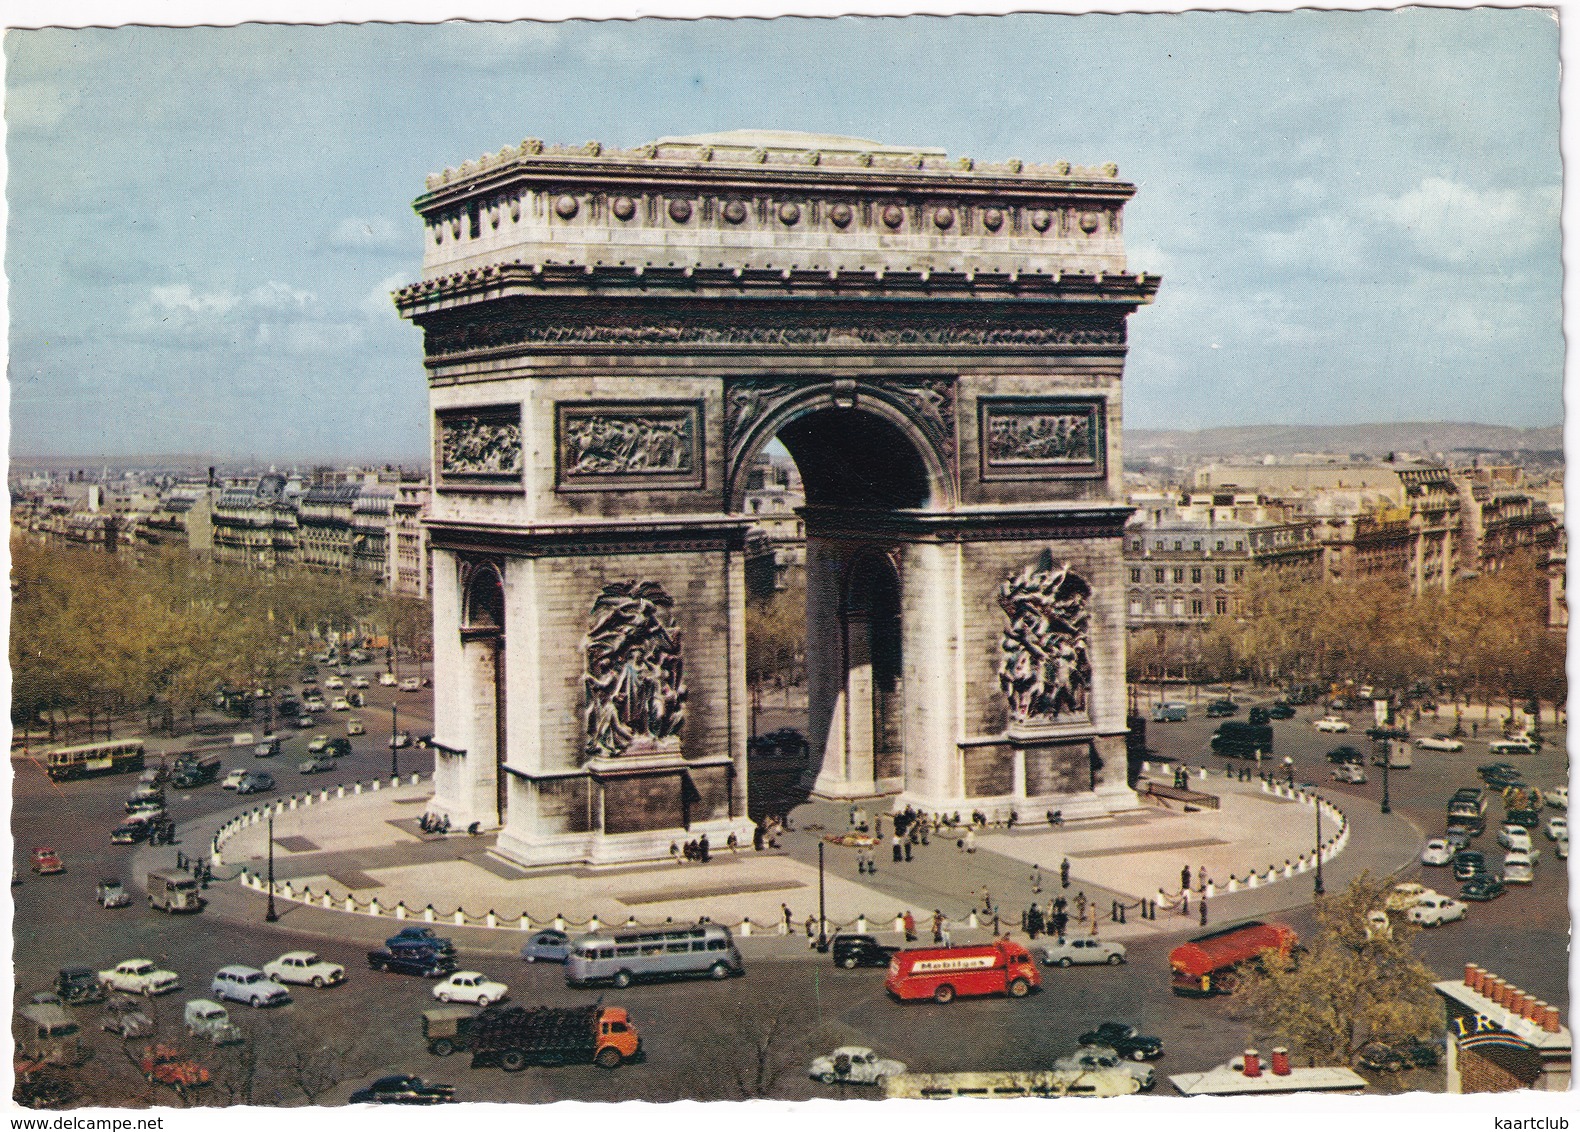 Paris: CITROËN TUBE HY, TRACTION AVANT, DS, PEUGEOT 403, BREAK, 'MOBILGAS' PETROLIER, RENAULT DAUPHINE - L'Arc - Toerisme